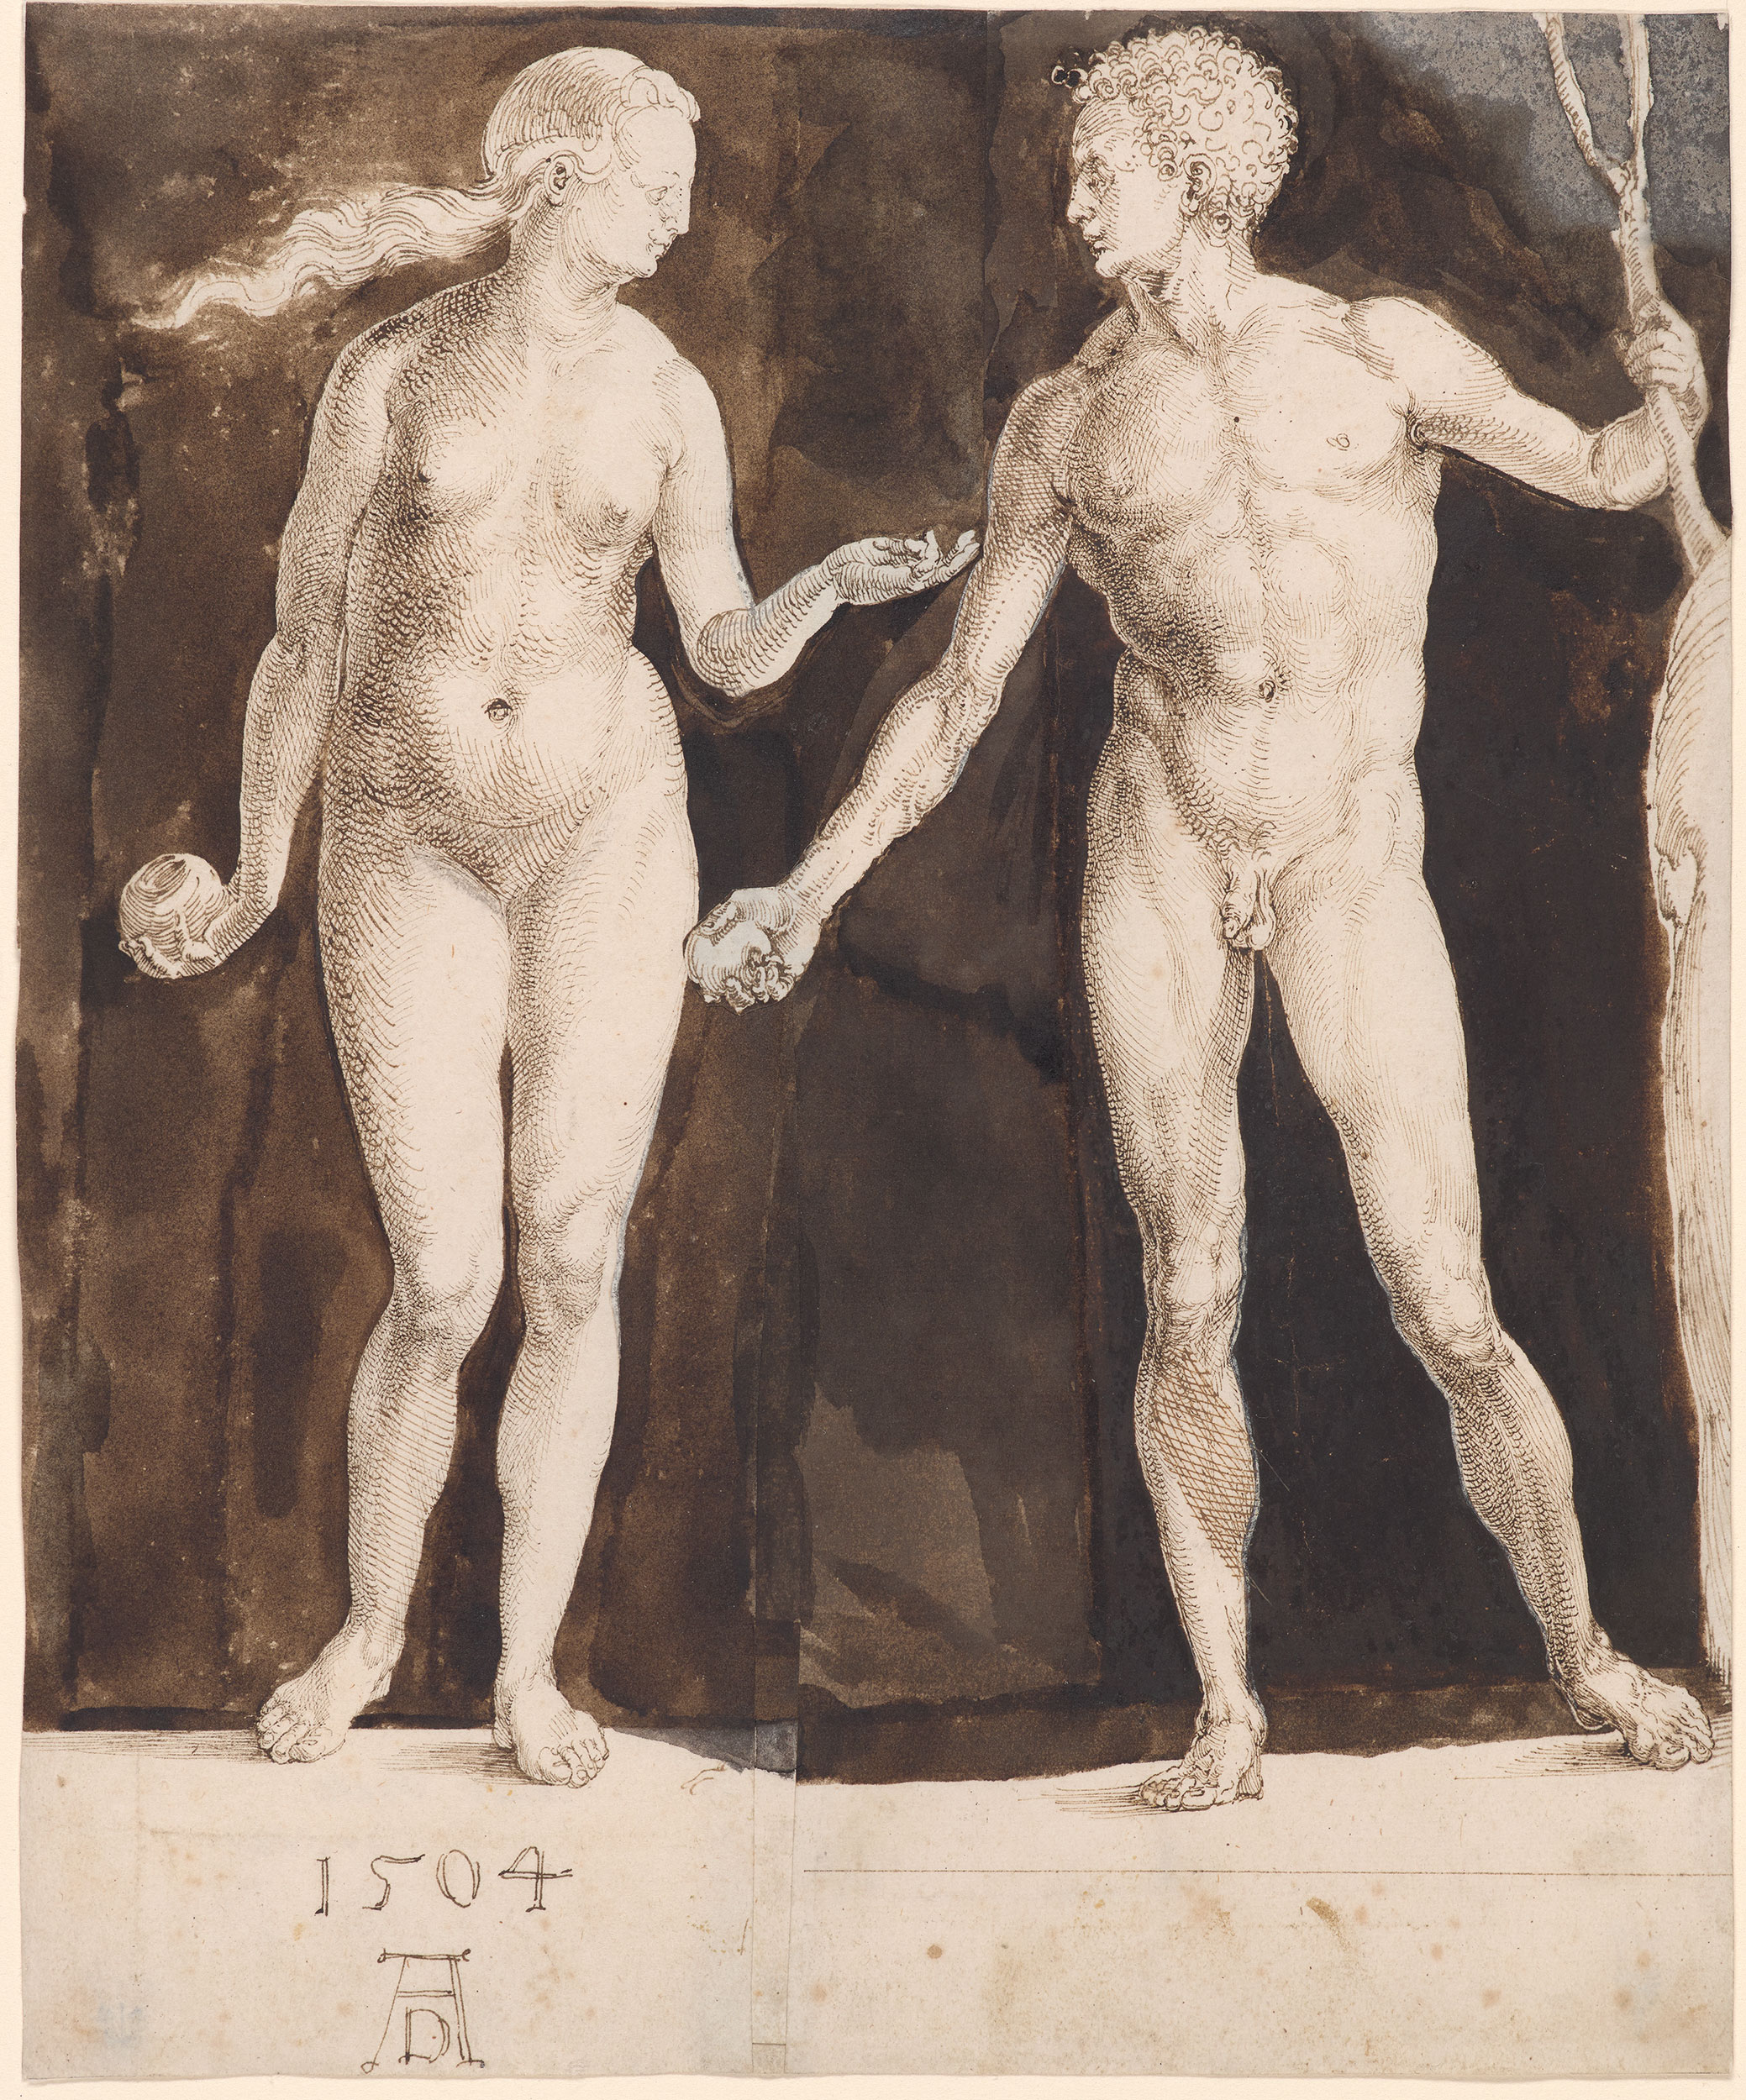 آدم وحواء by Albrecht Dürer - 1504 - 242 x 201 مم 